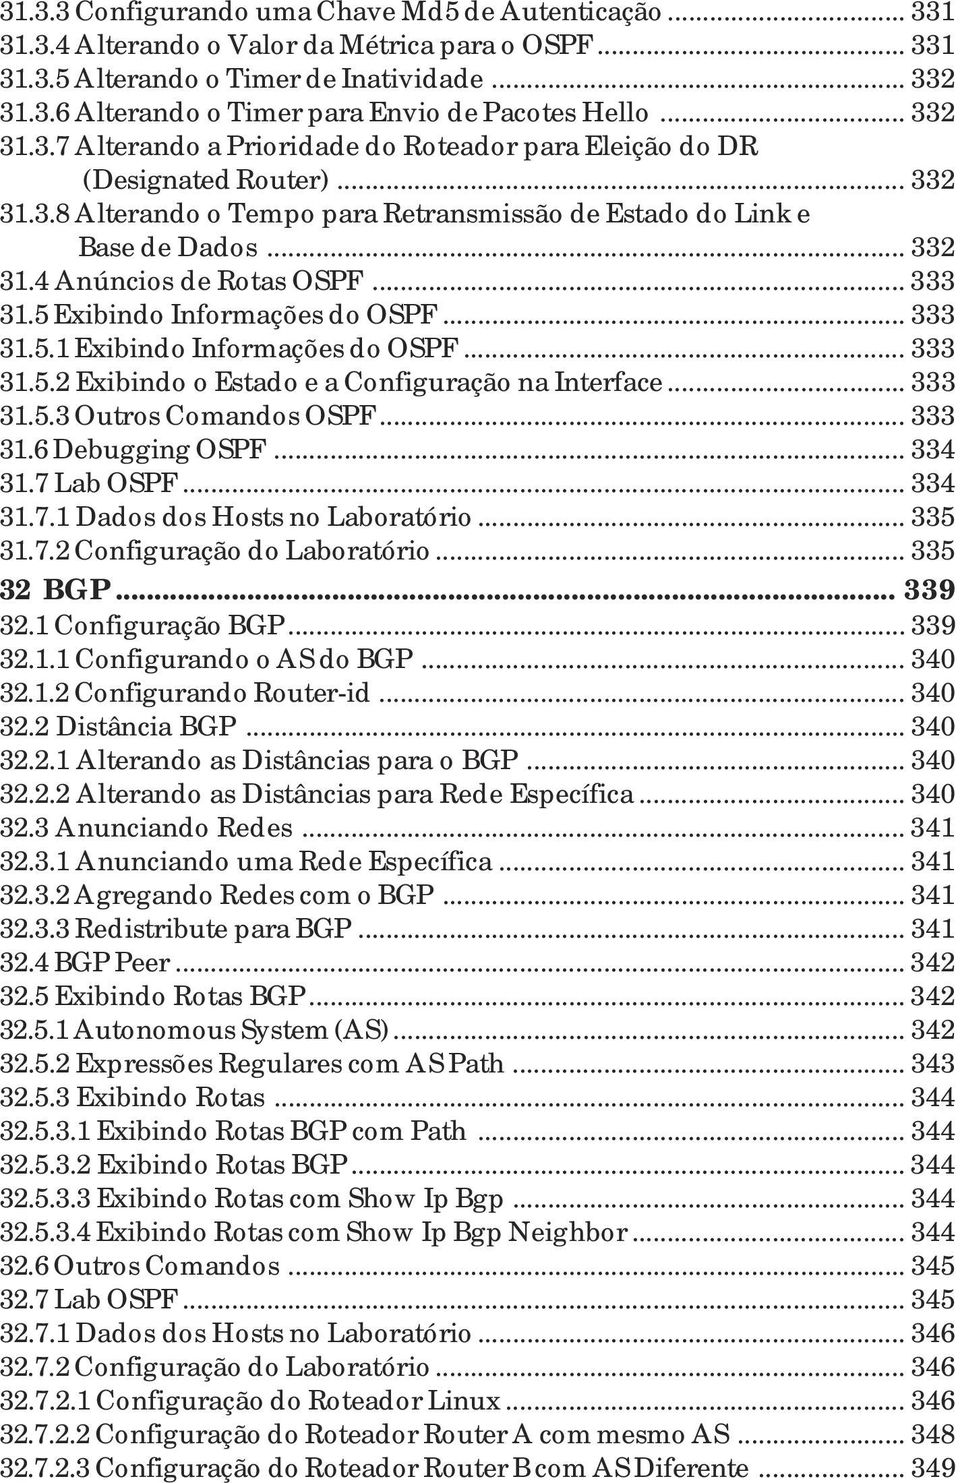 .. 333 31.5 Exibindo Informações do OSPF... 333 31.5.1 Exibindo Informações do OSPF... 333 31.5.2 Exibindo o Estado e a Configuração na Interface... 333 31.5.3 Outros Comandos OSPF... 333 31.6 Debugging OSPF.